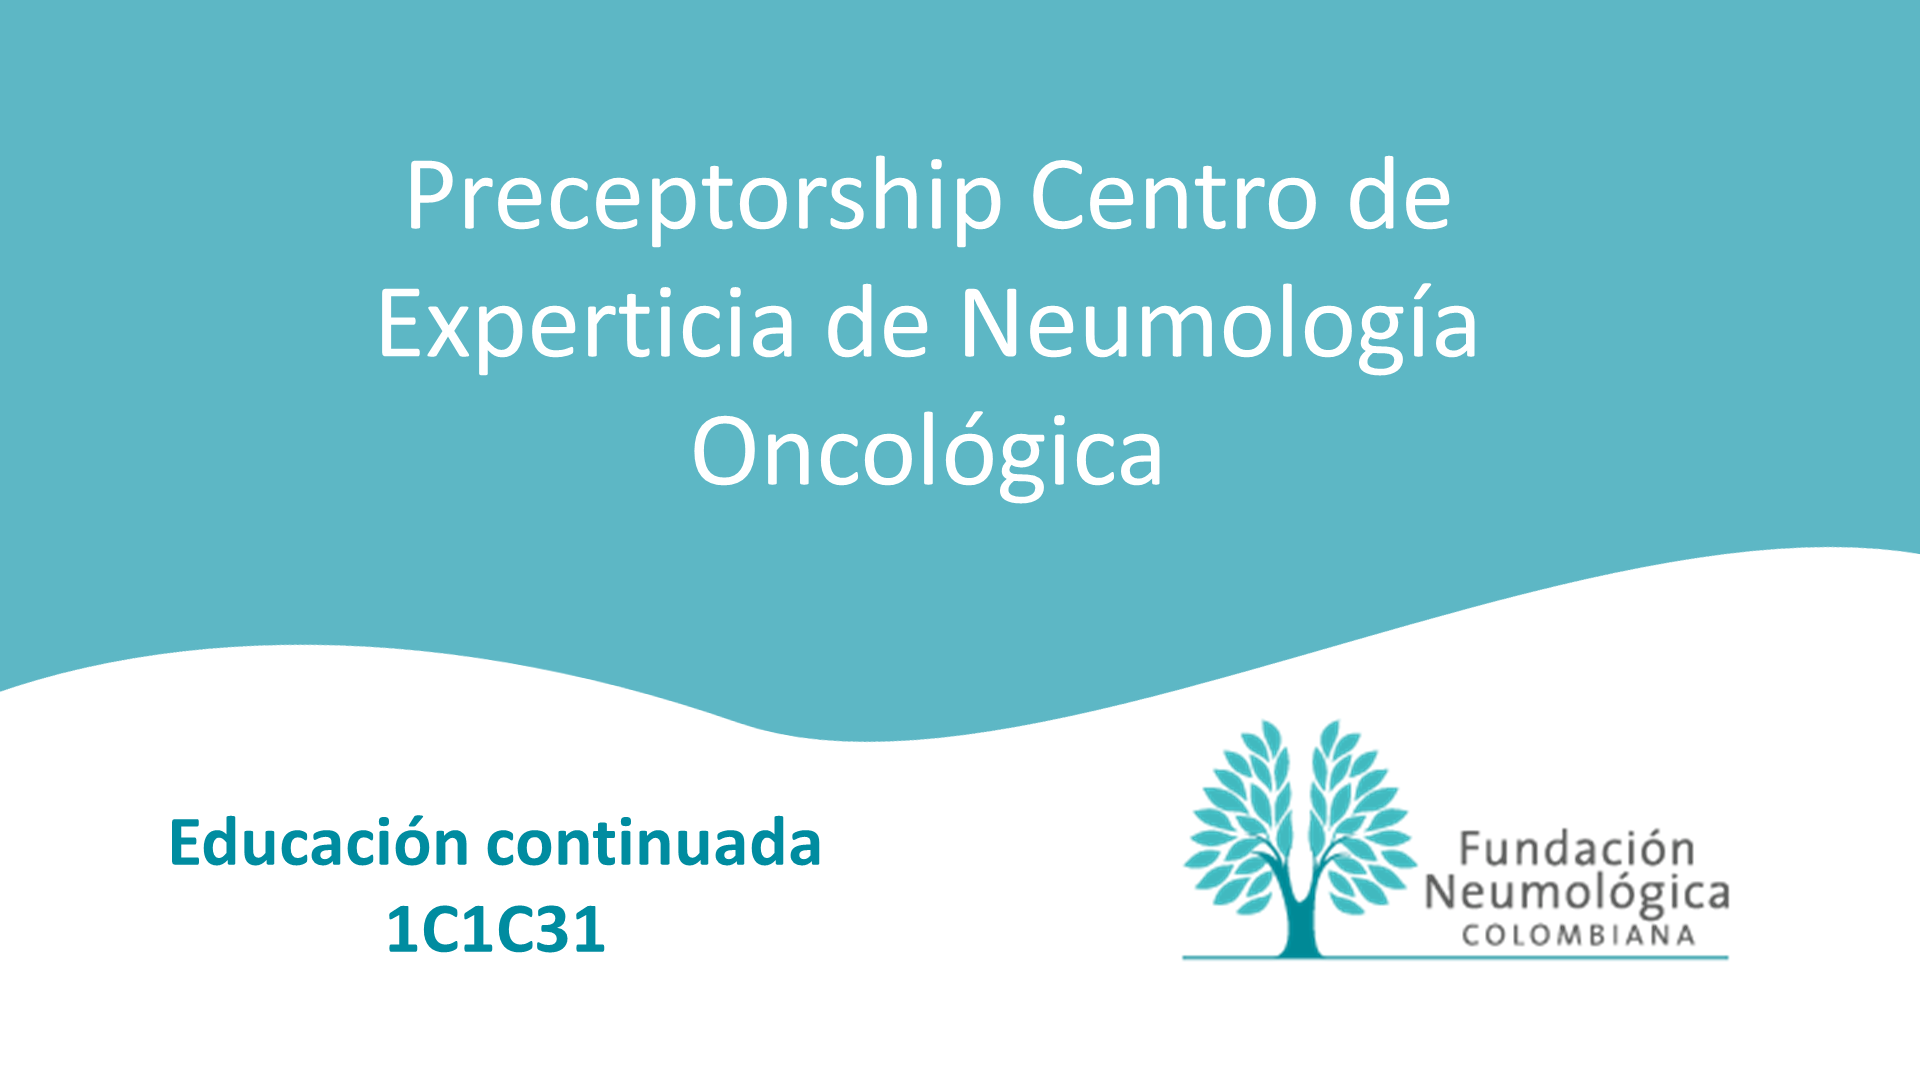 Preceptorship Centro de Experticia de Neumología Oncológica